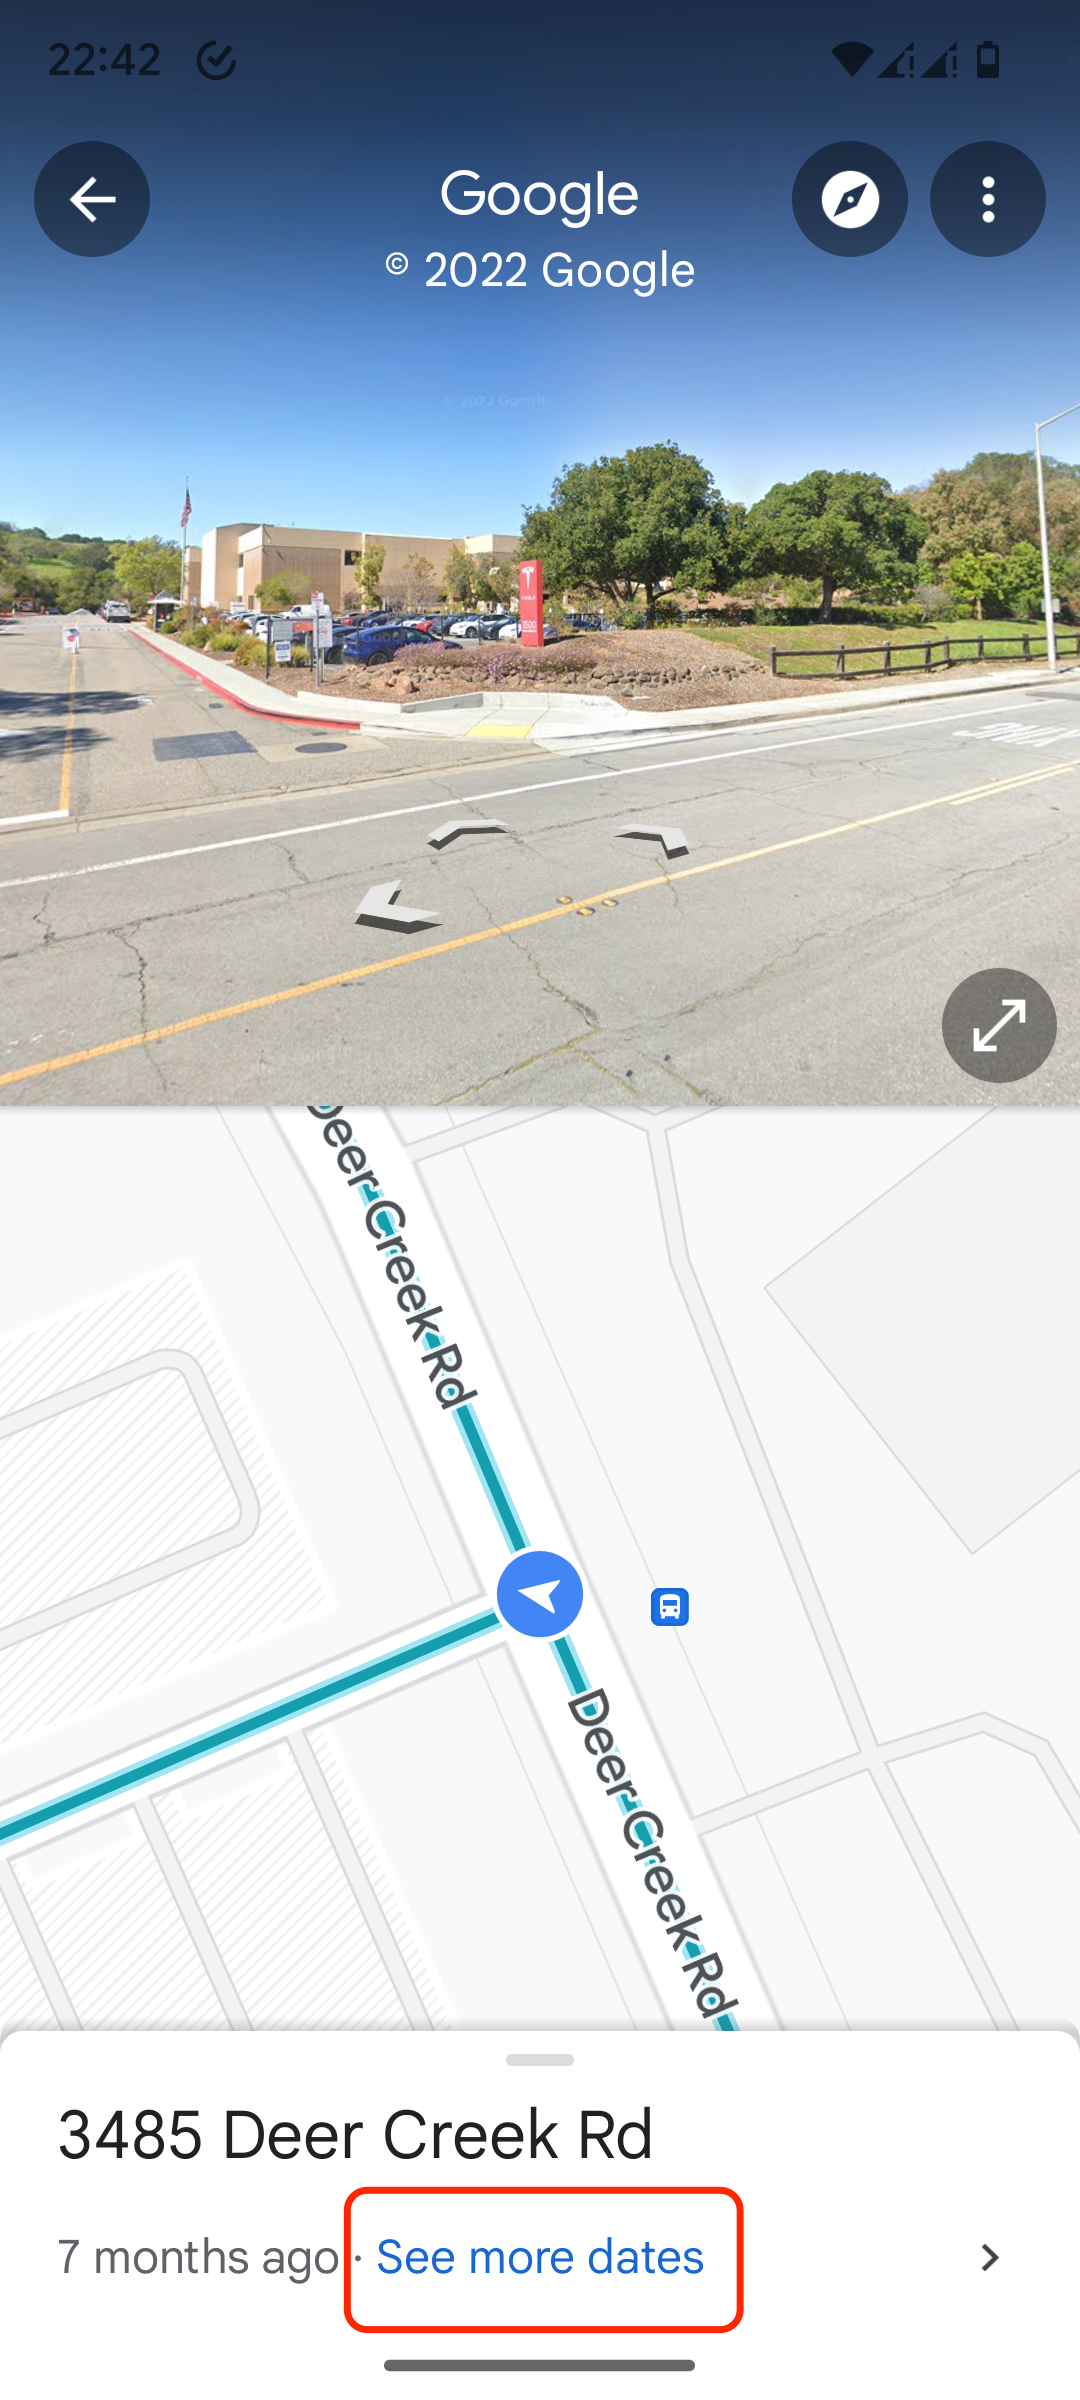 lihat lebih banyak tanggal untuk suatu tempat di Google Maps untuk Android